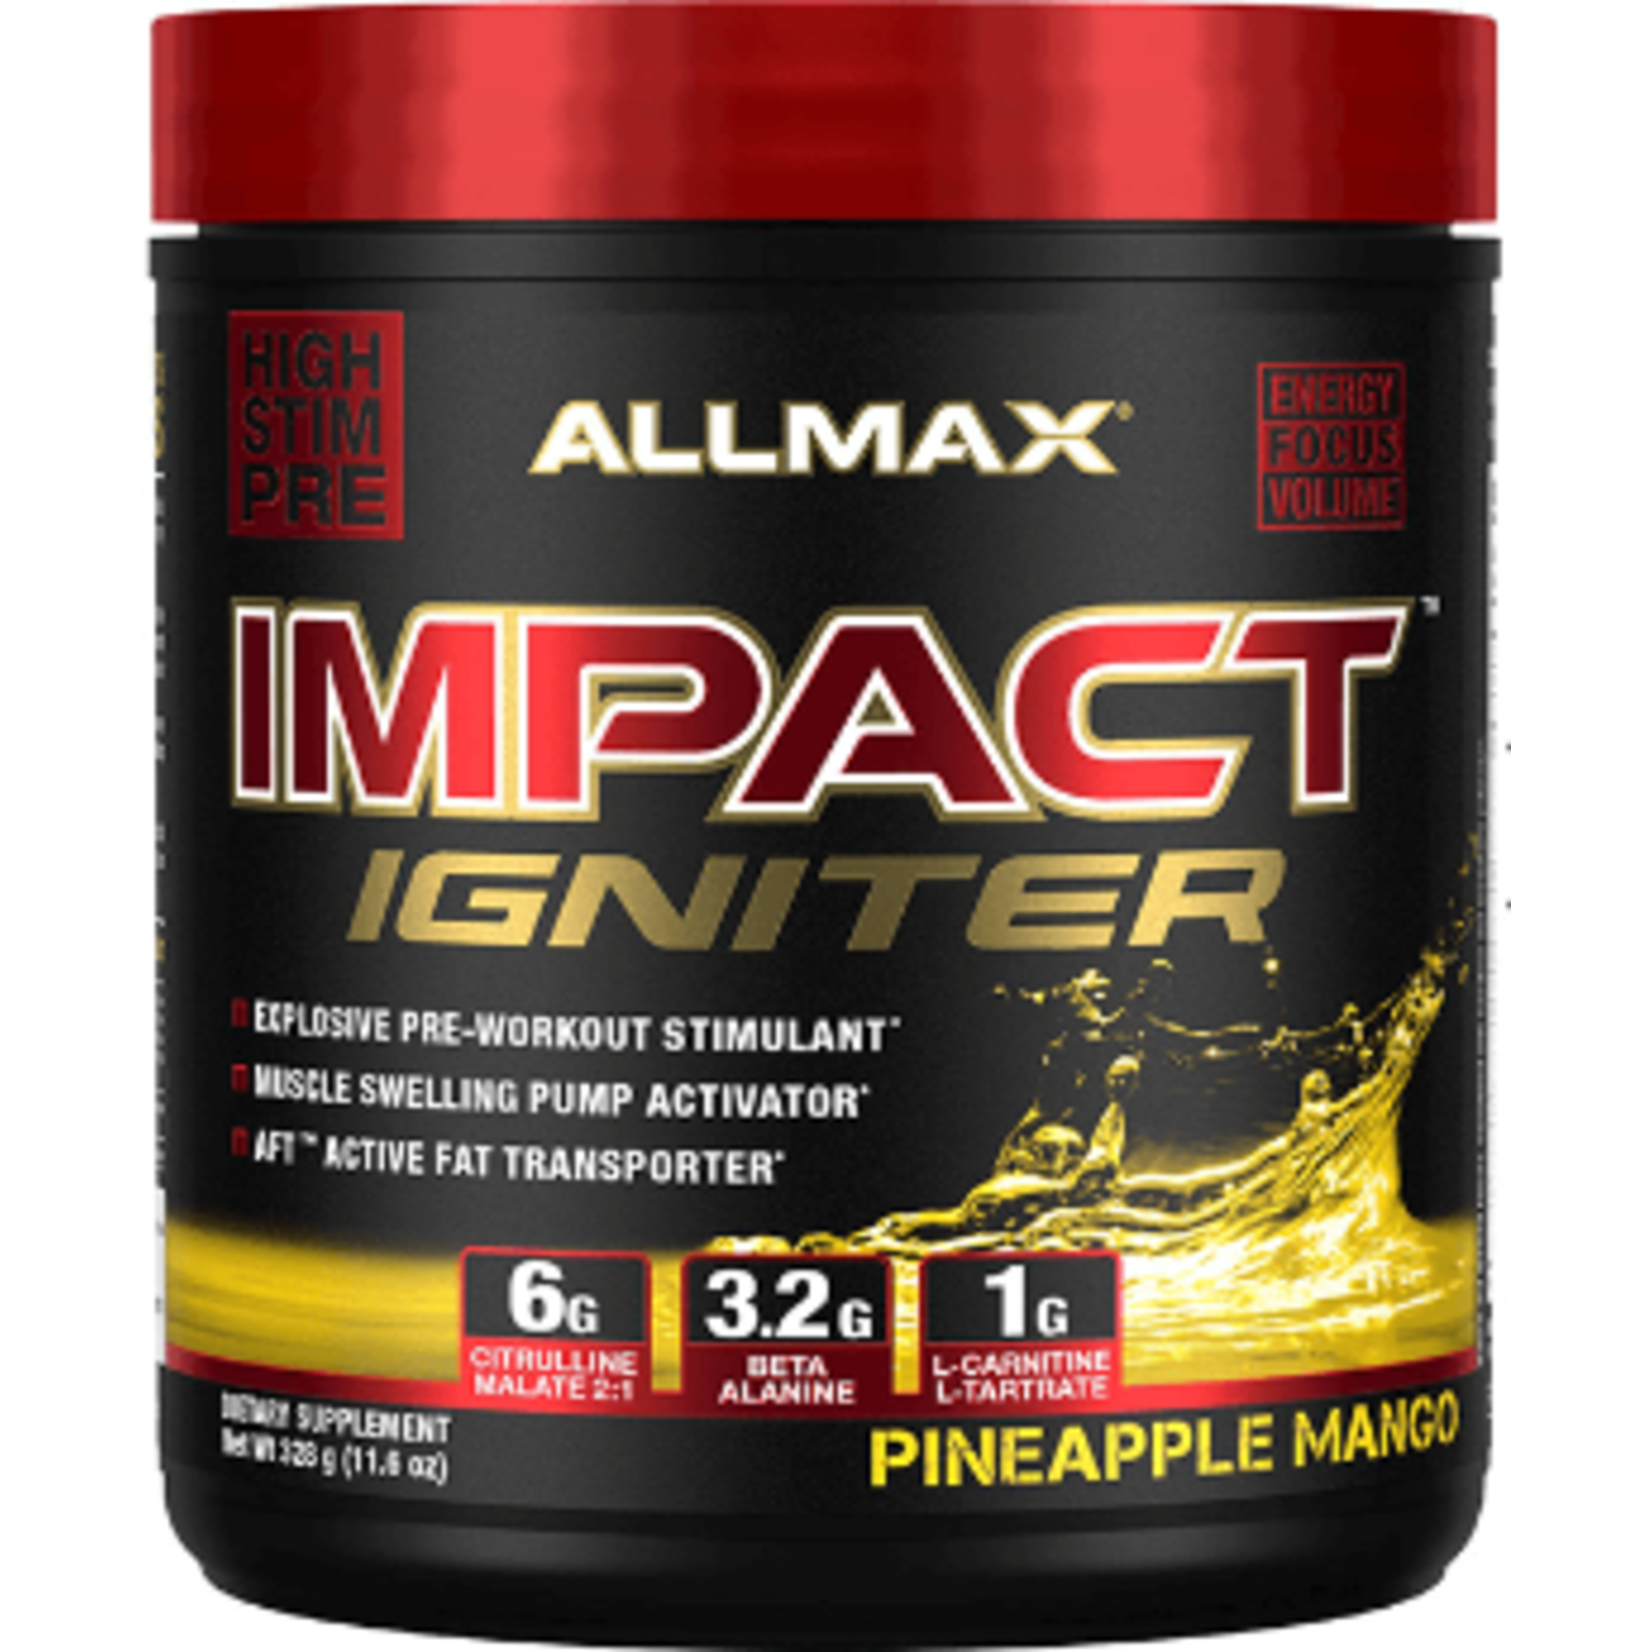 Allmax Impact Ignitor